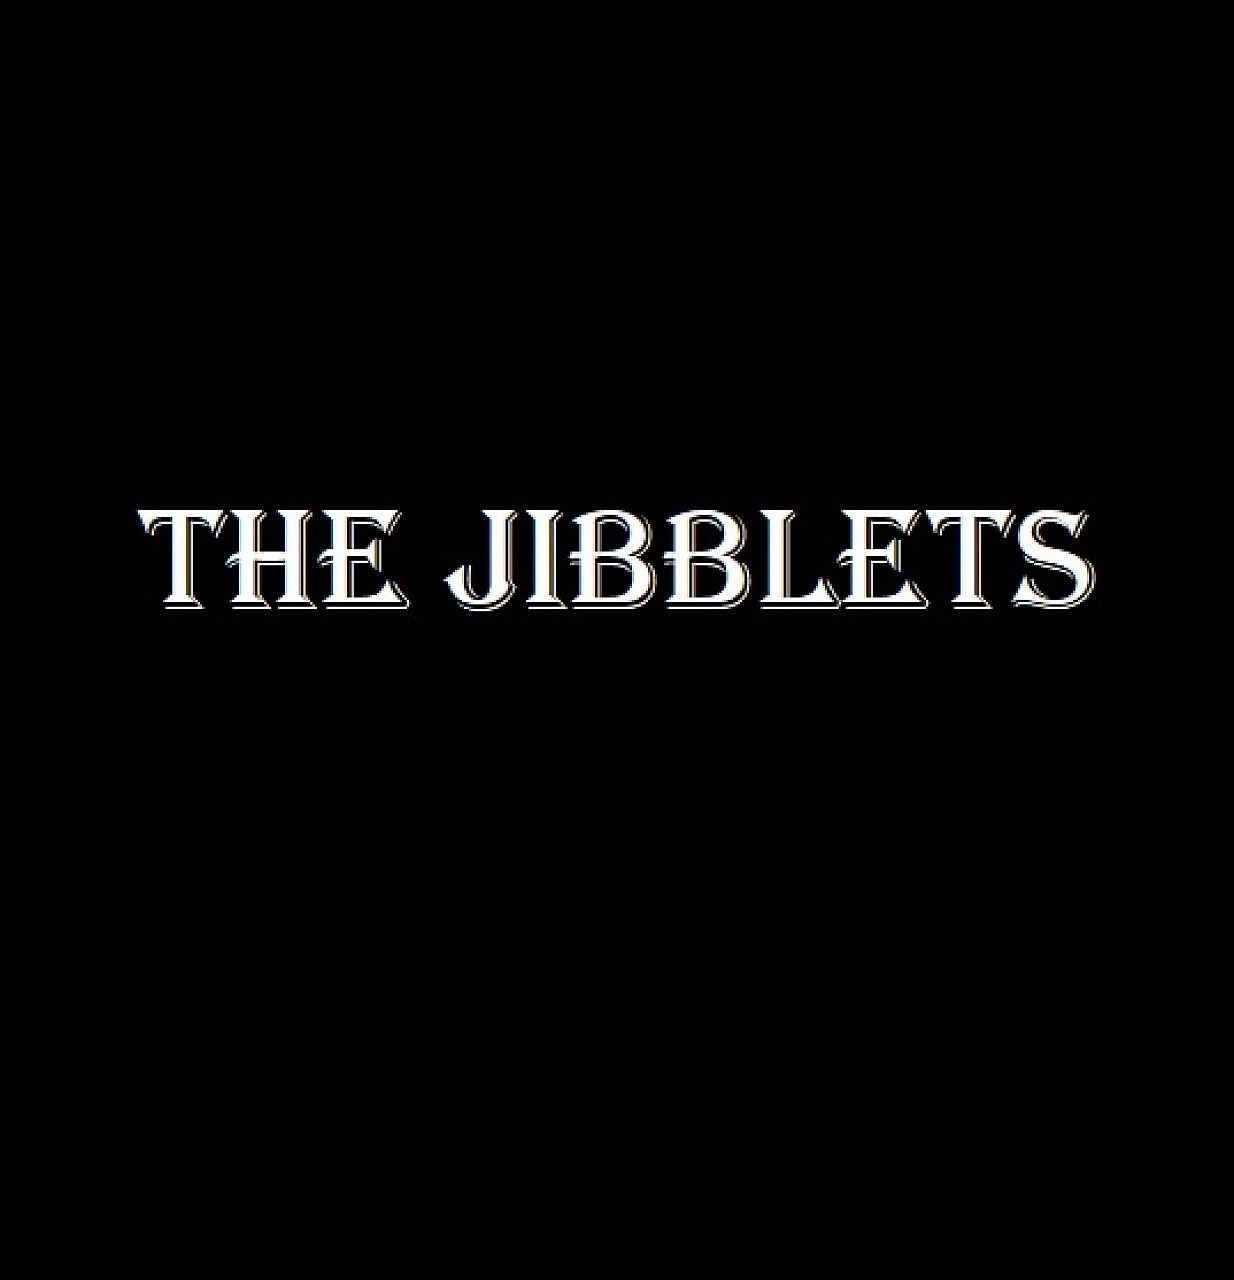 The Jibblets